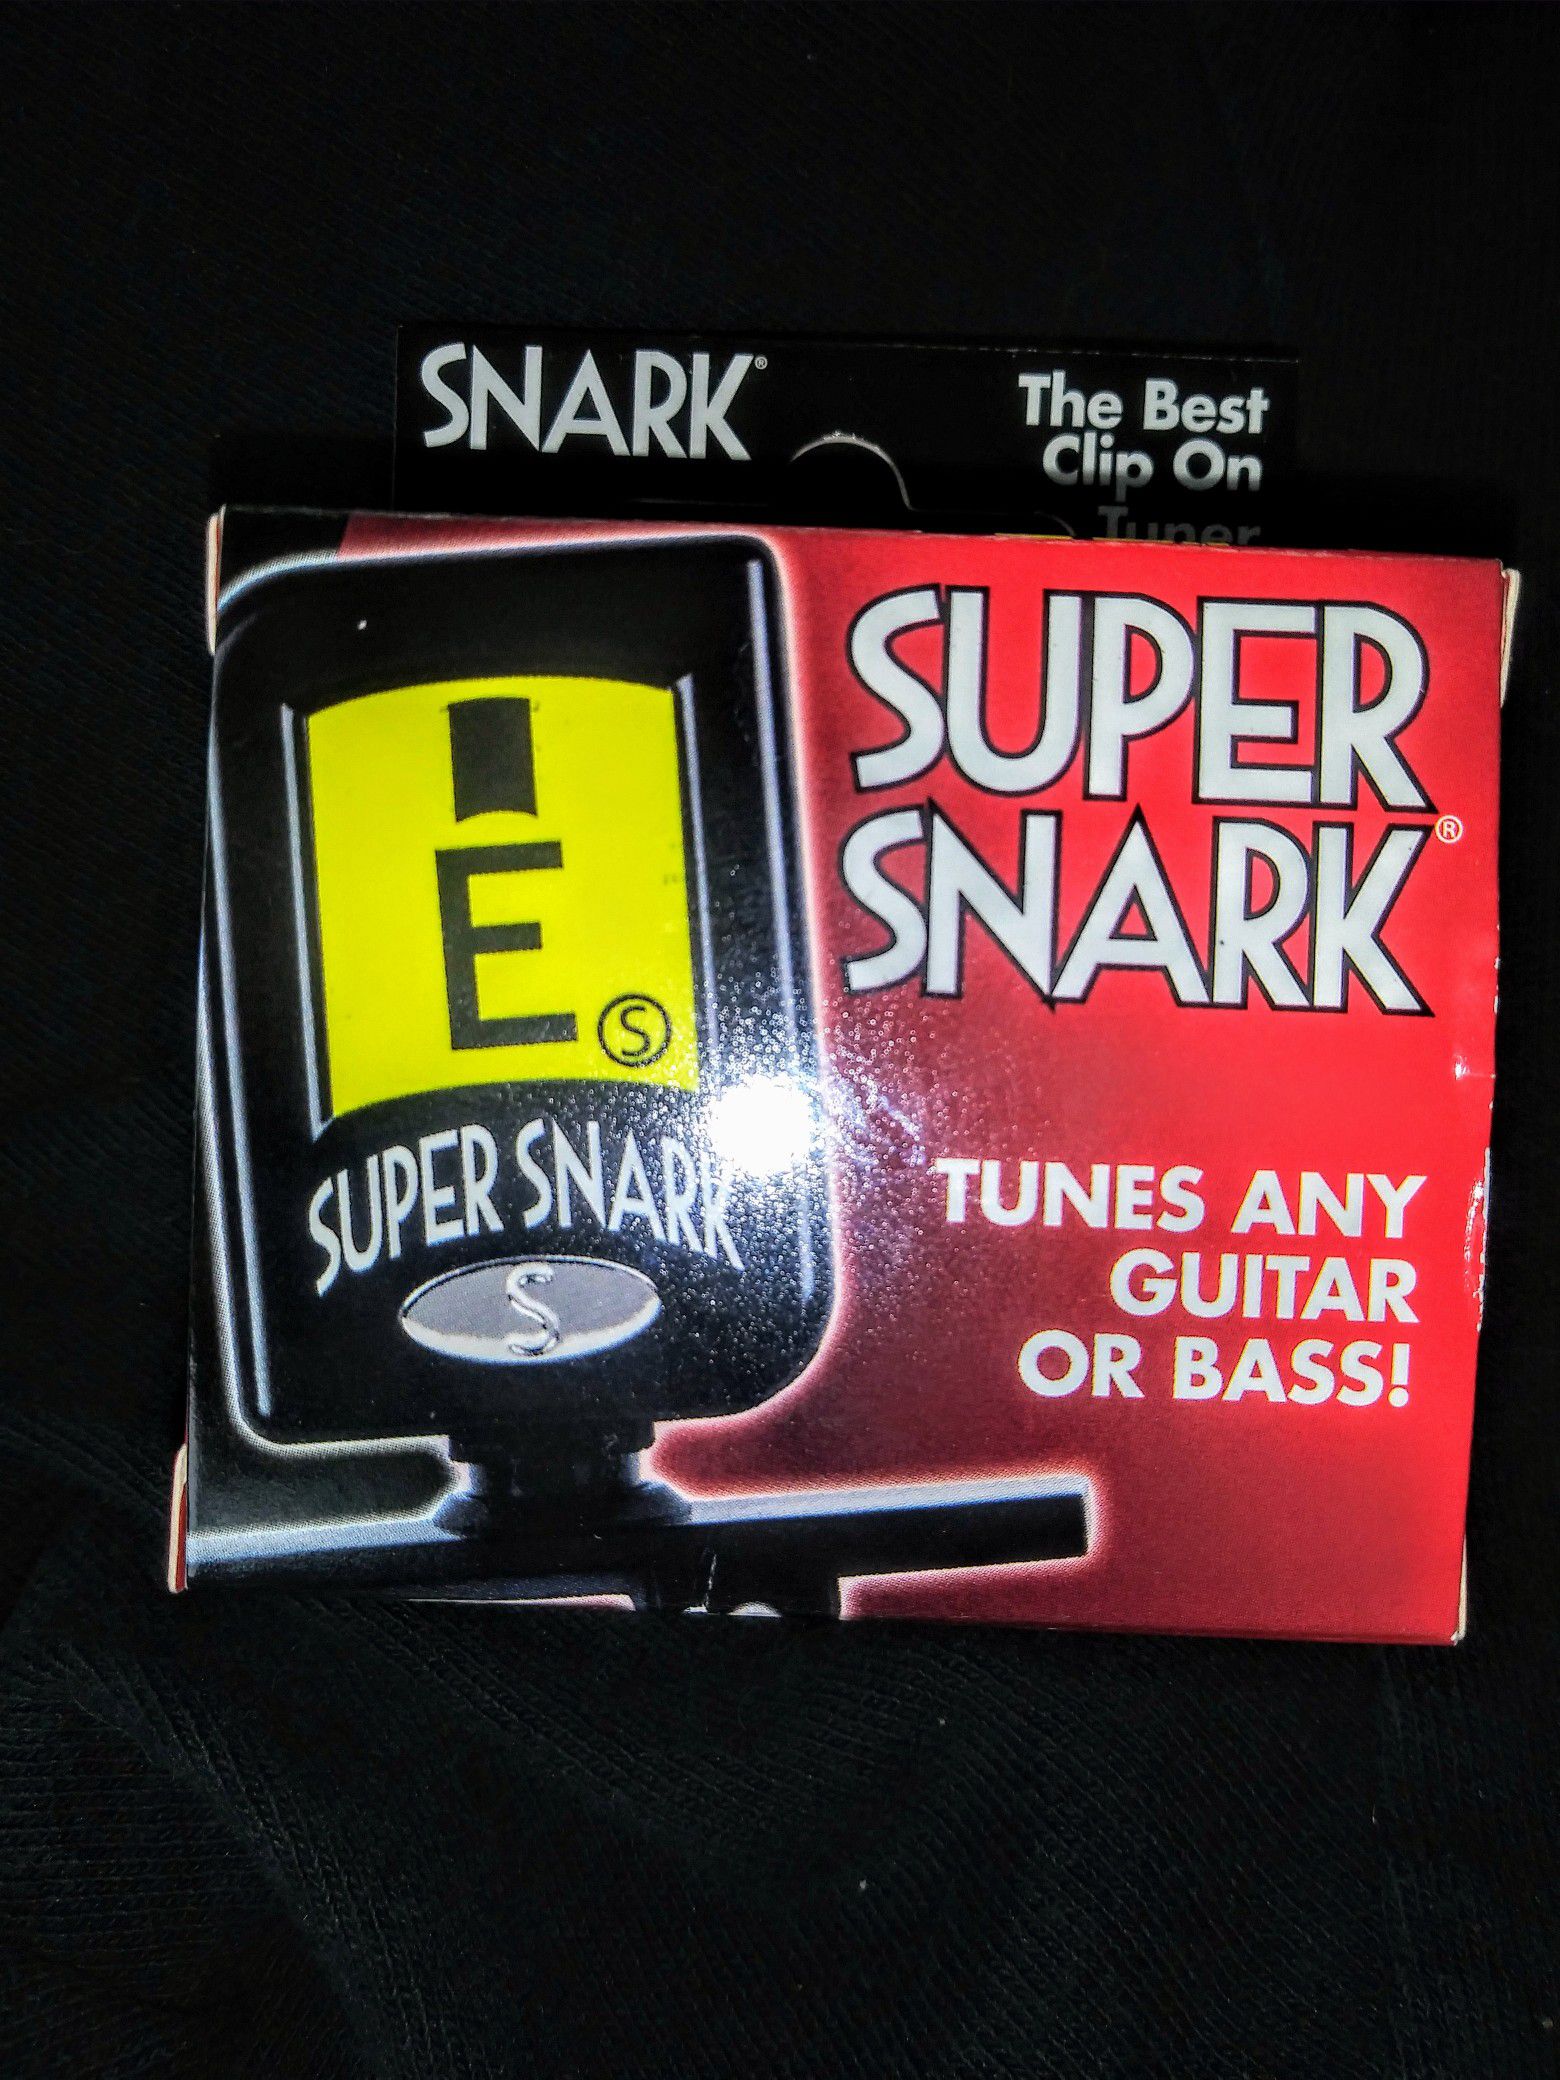 Super Snark guitar/bass tuner